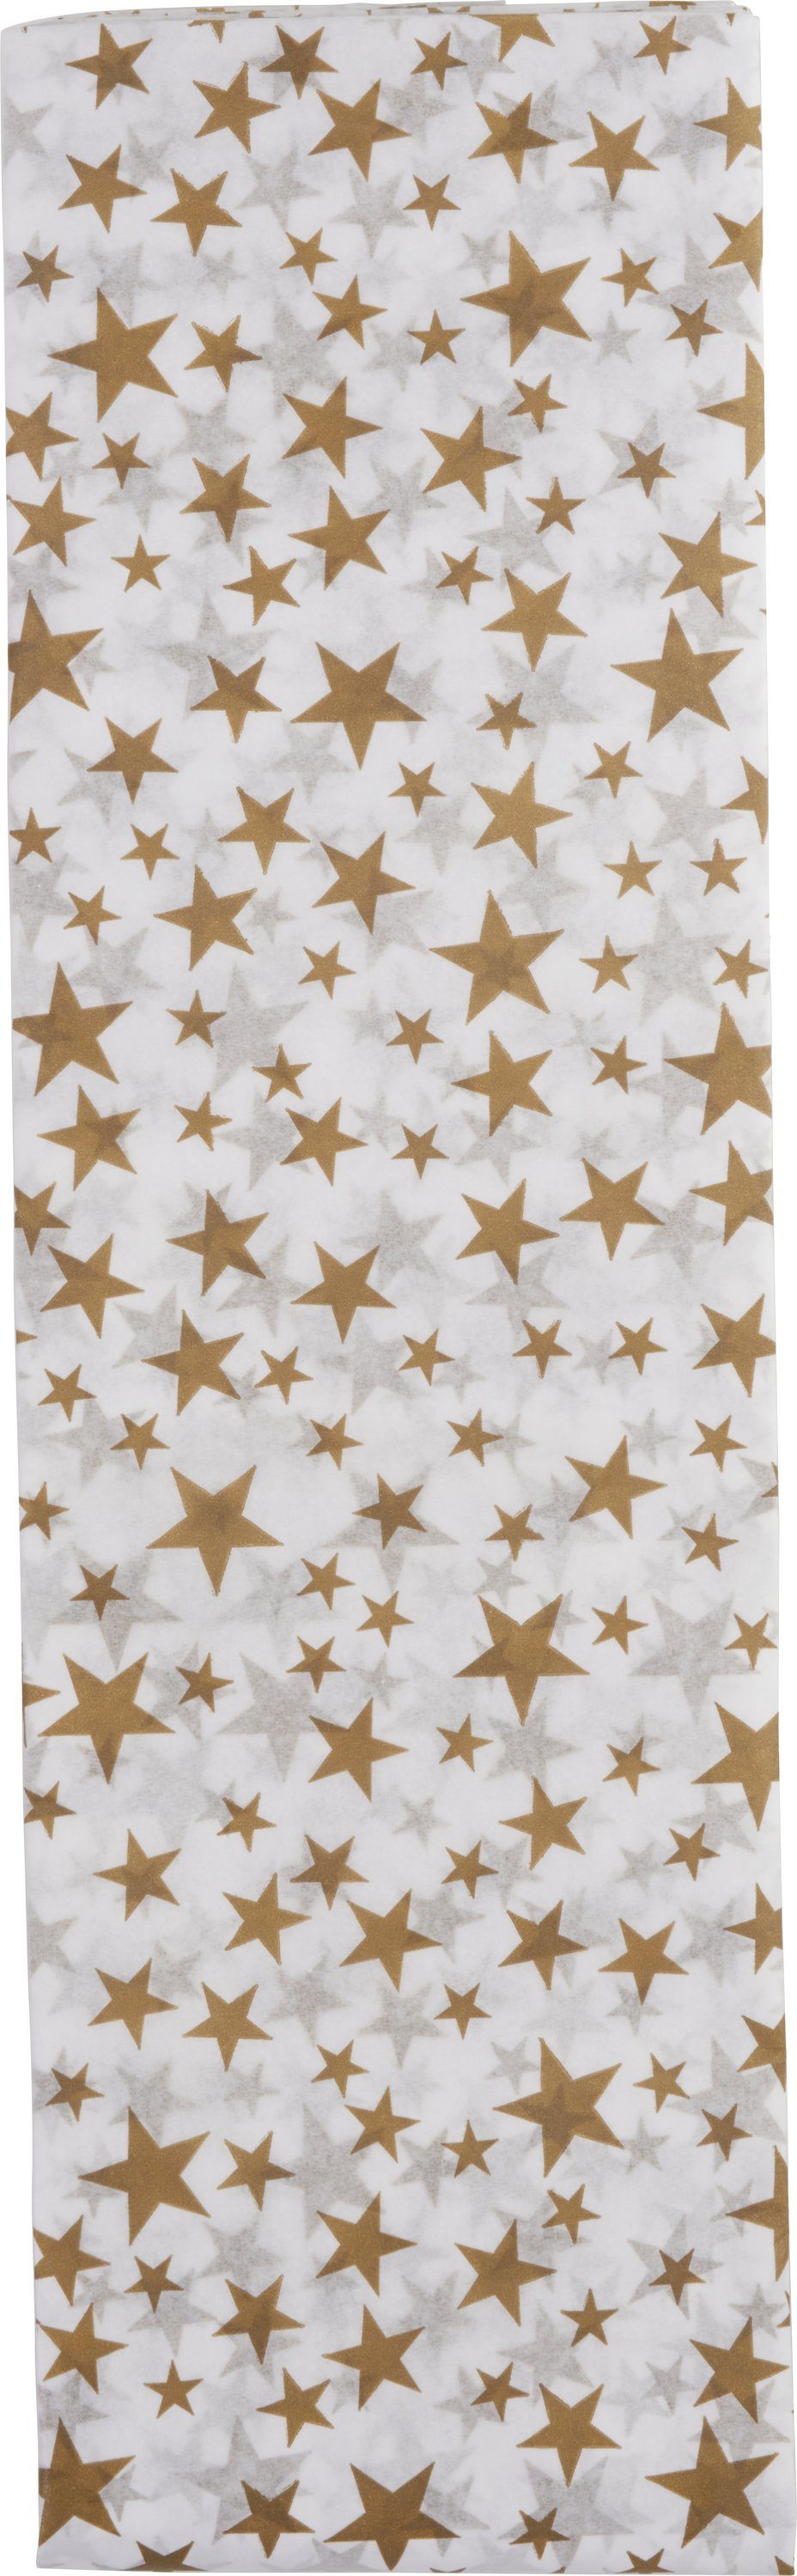 CLAIREFONTAINE Seidenpapier Sterne, 4 Bogen Gold | Papier